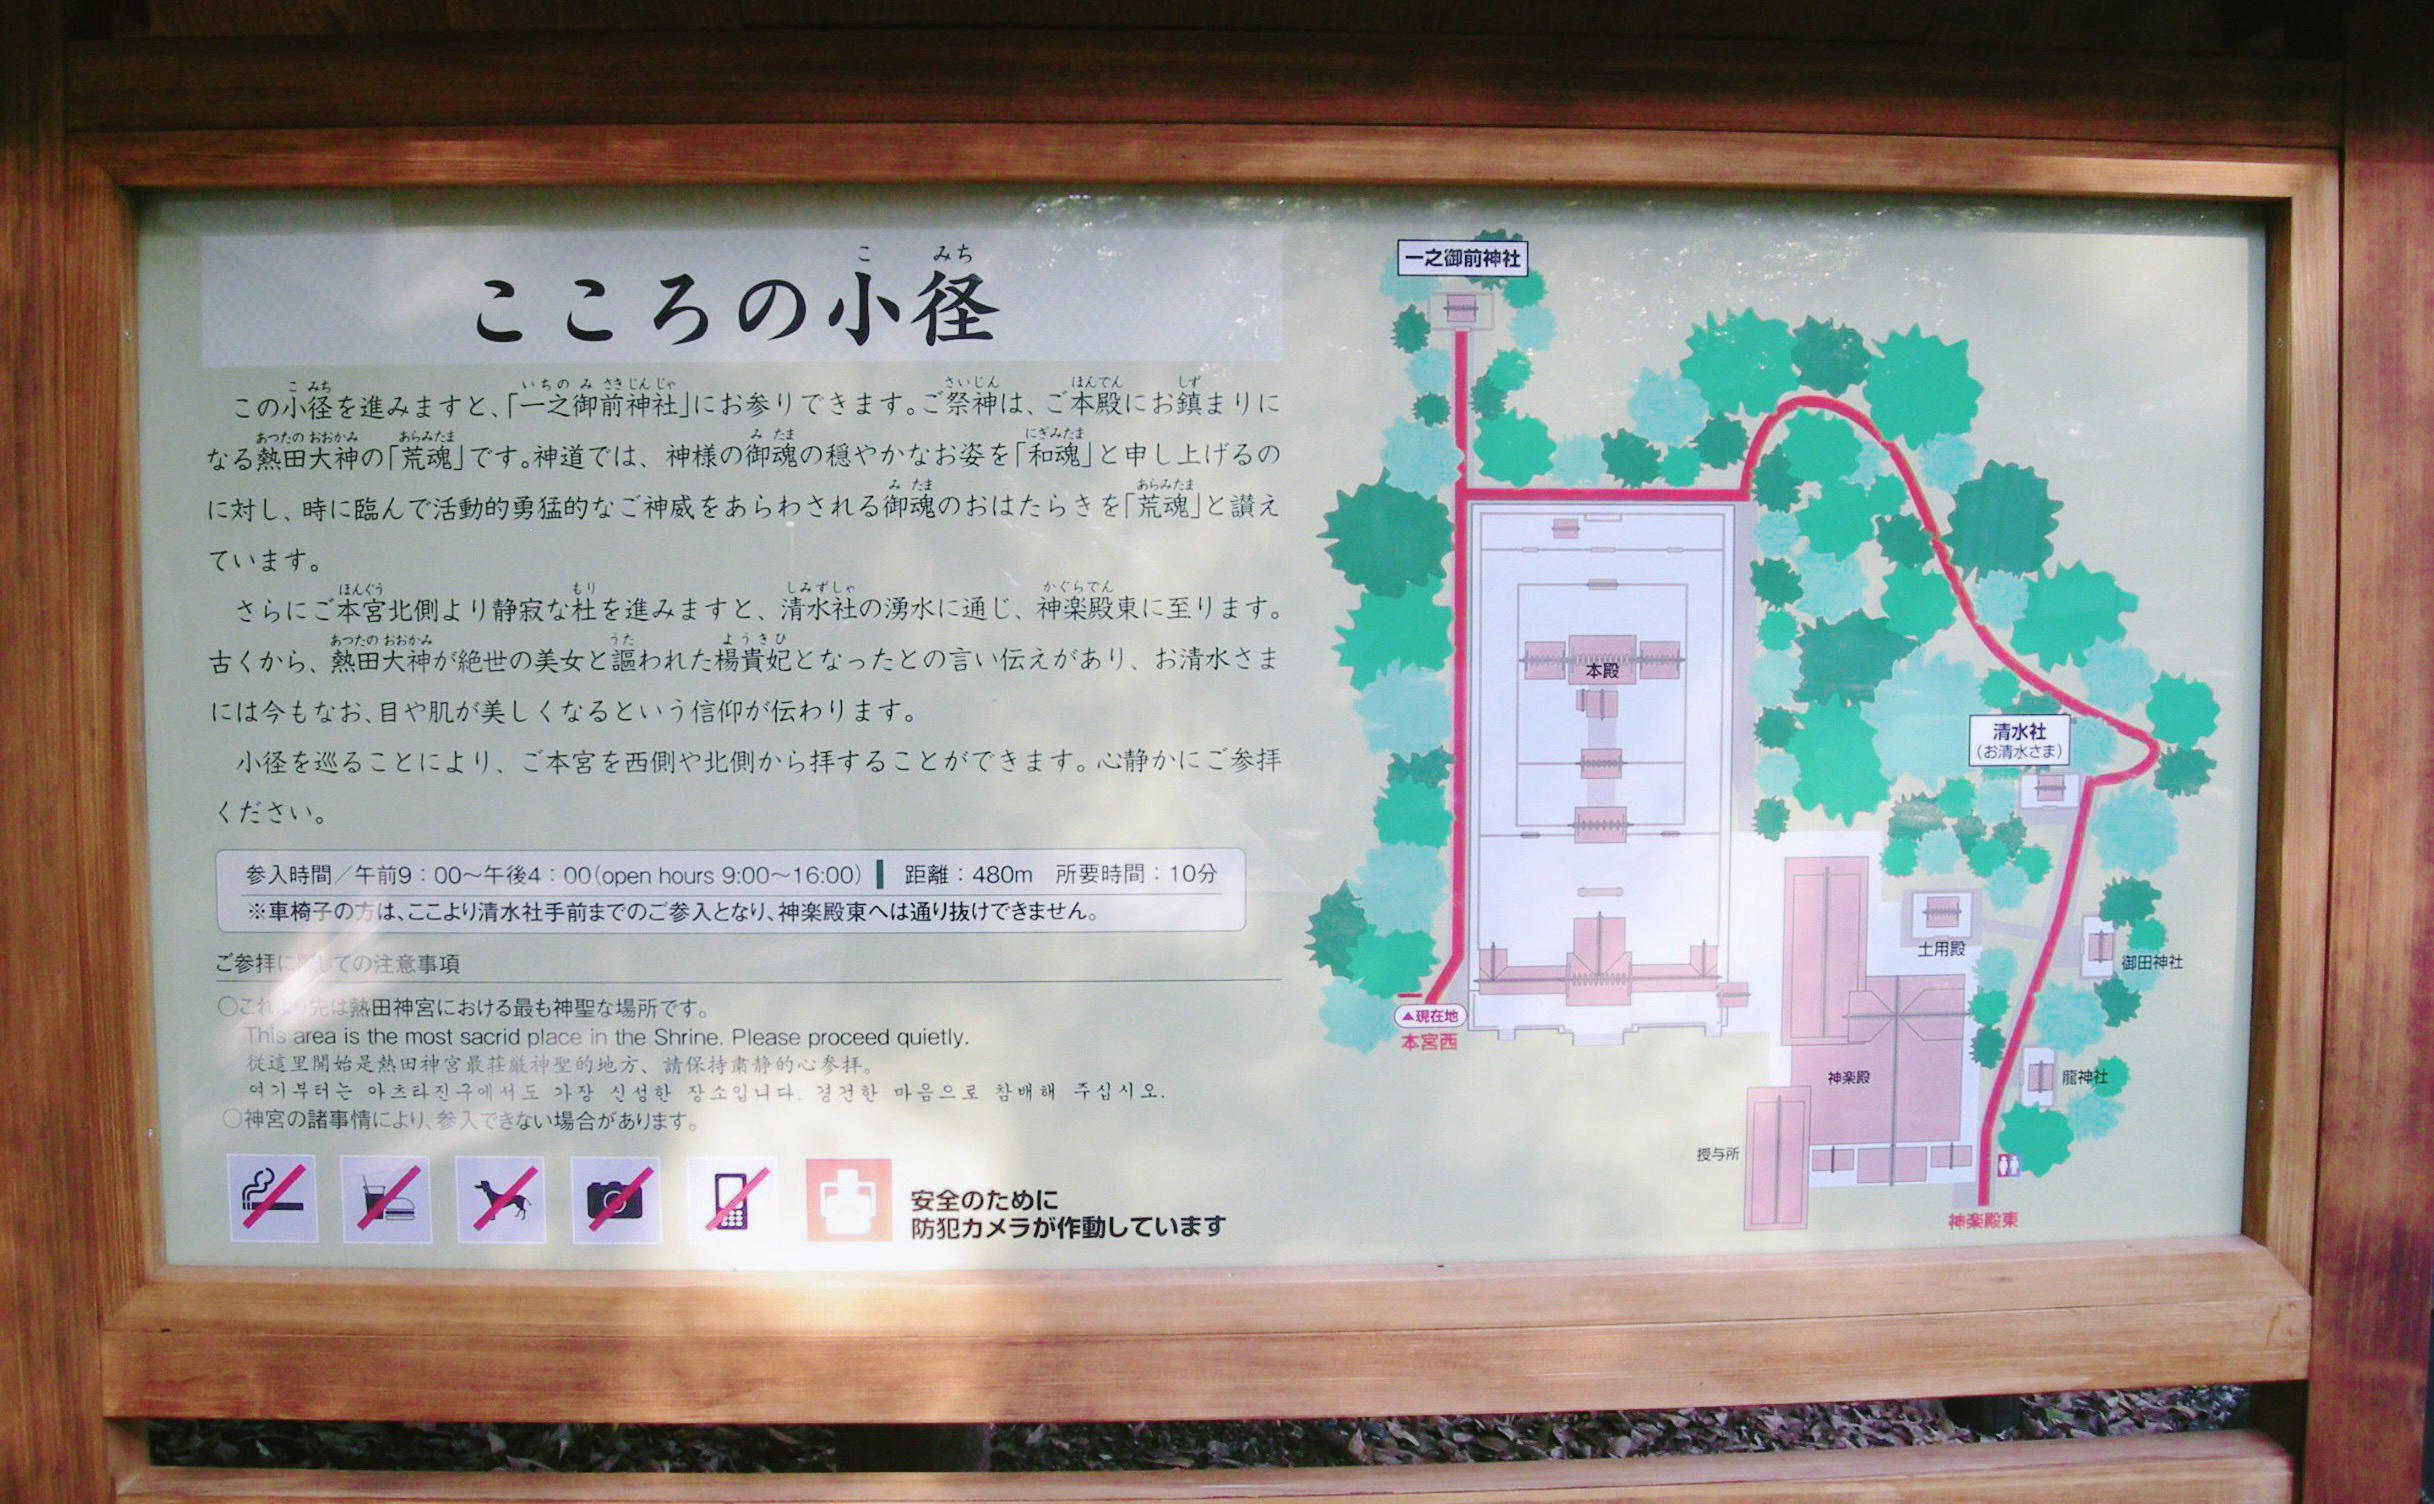 こころの小径 熱田神宮 おまいり日和blog おまいり日和blog